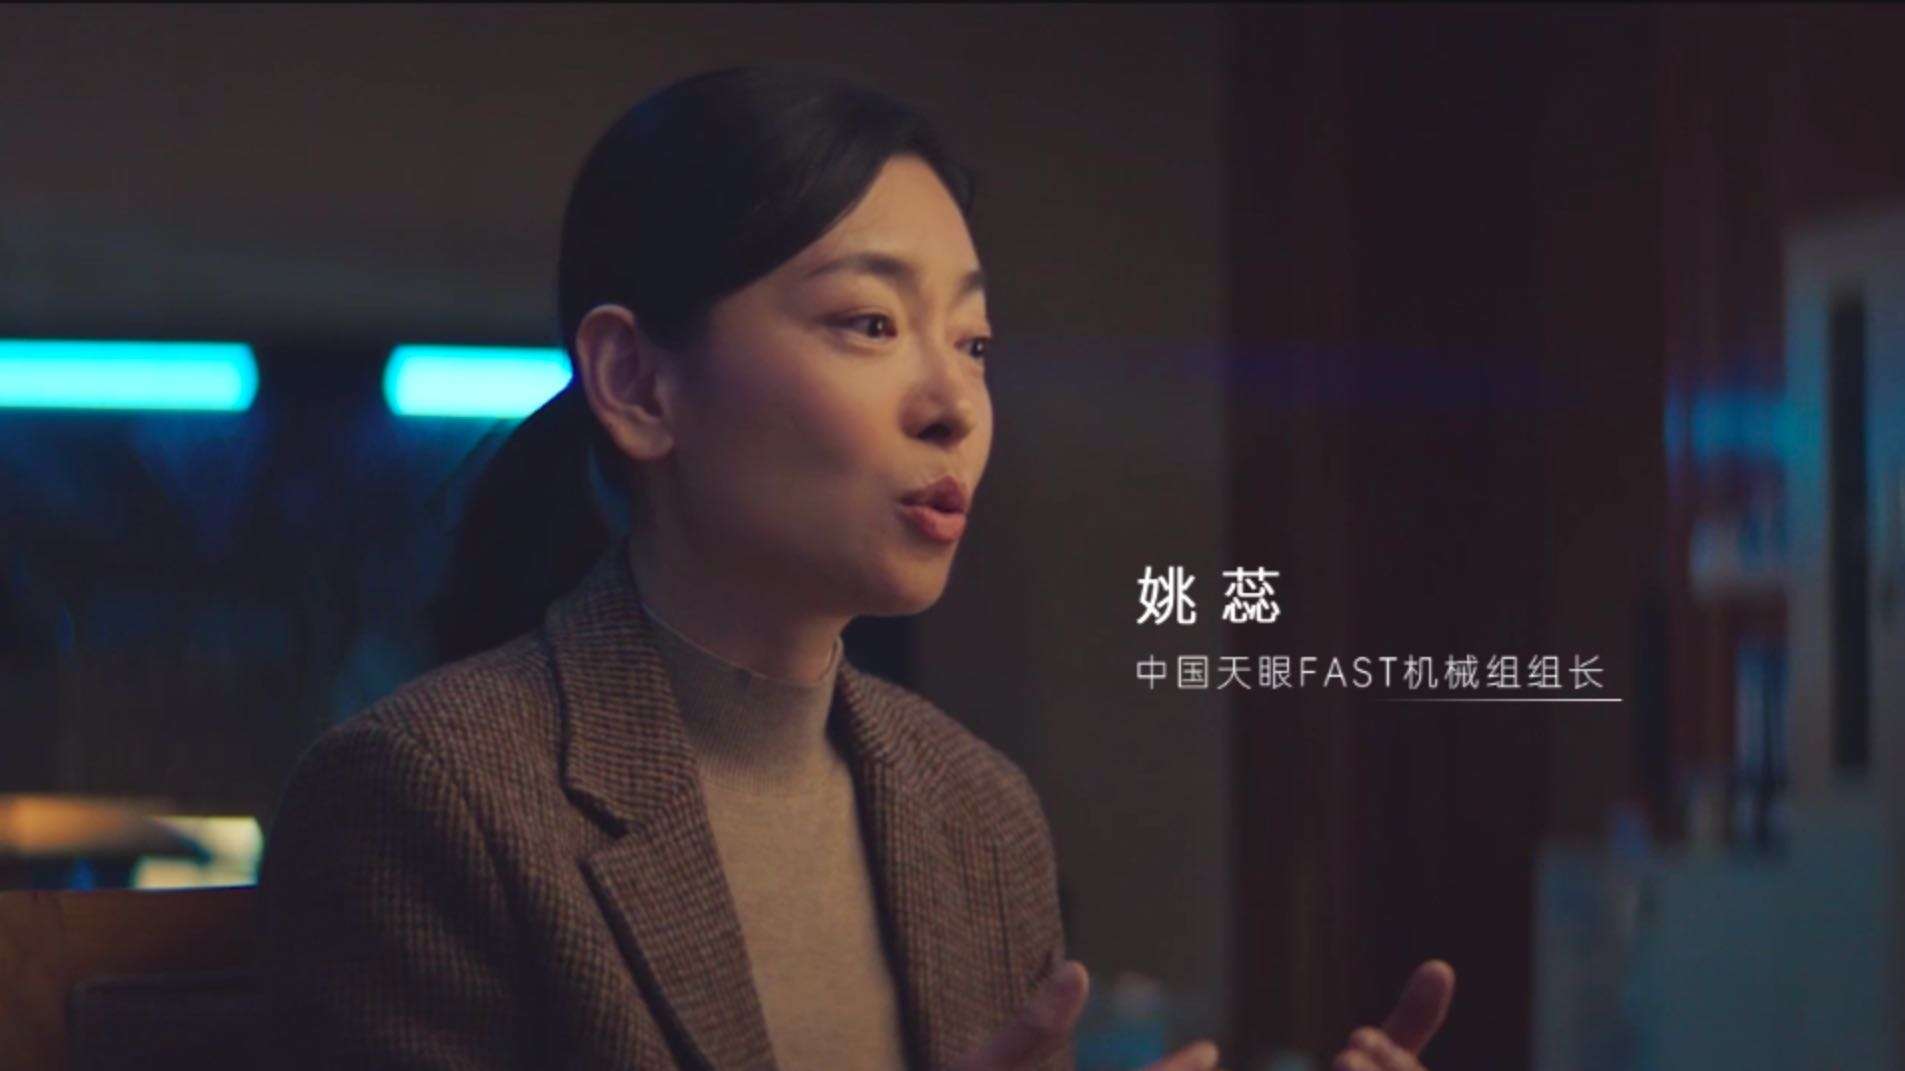 中国日报 x HBN x 新世相 纪录片《求真的决意》  中国天眼姚蕊